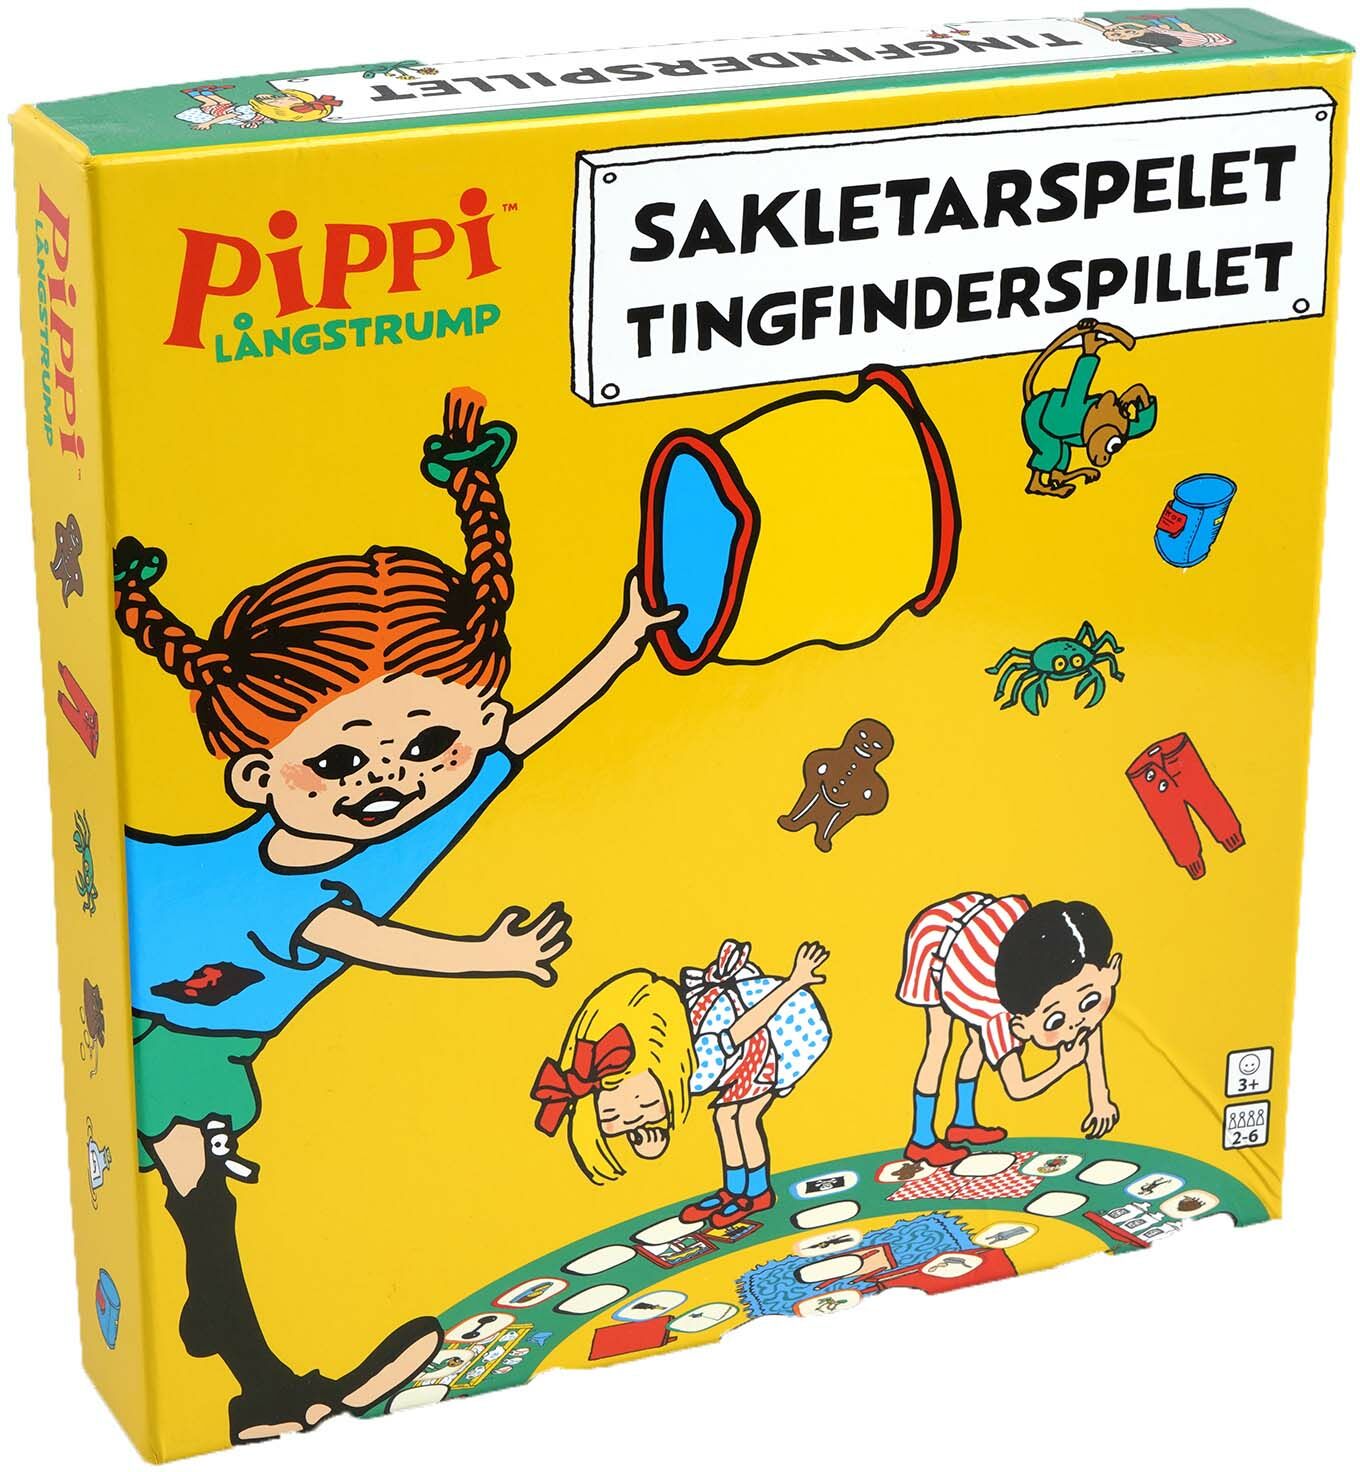 Barbo Toys Pippi Långstrump Sakletarspelet